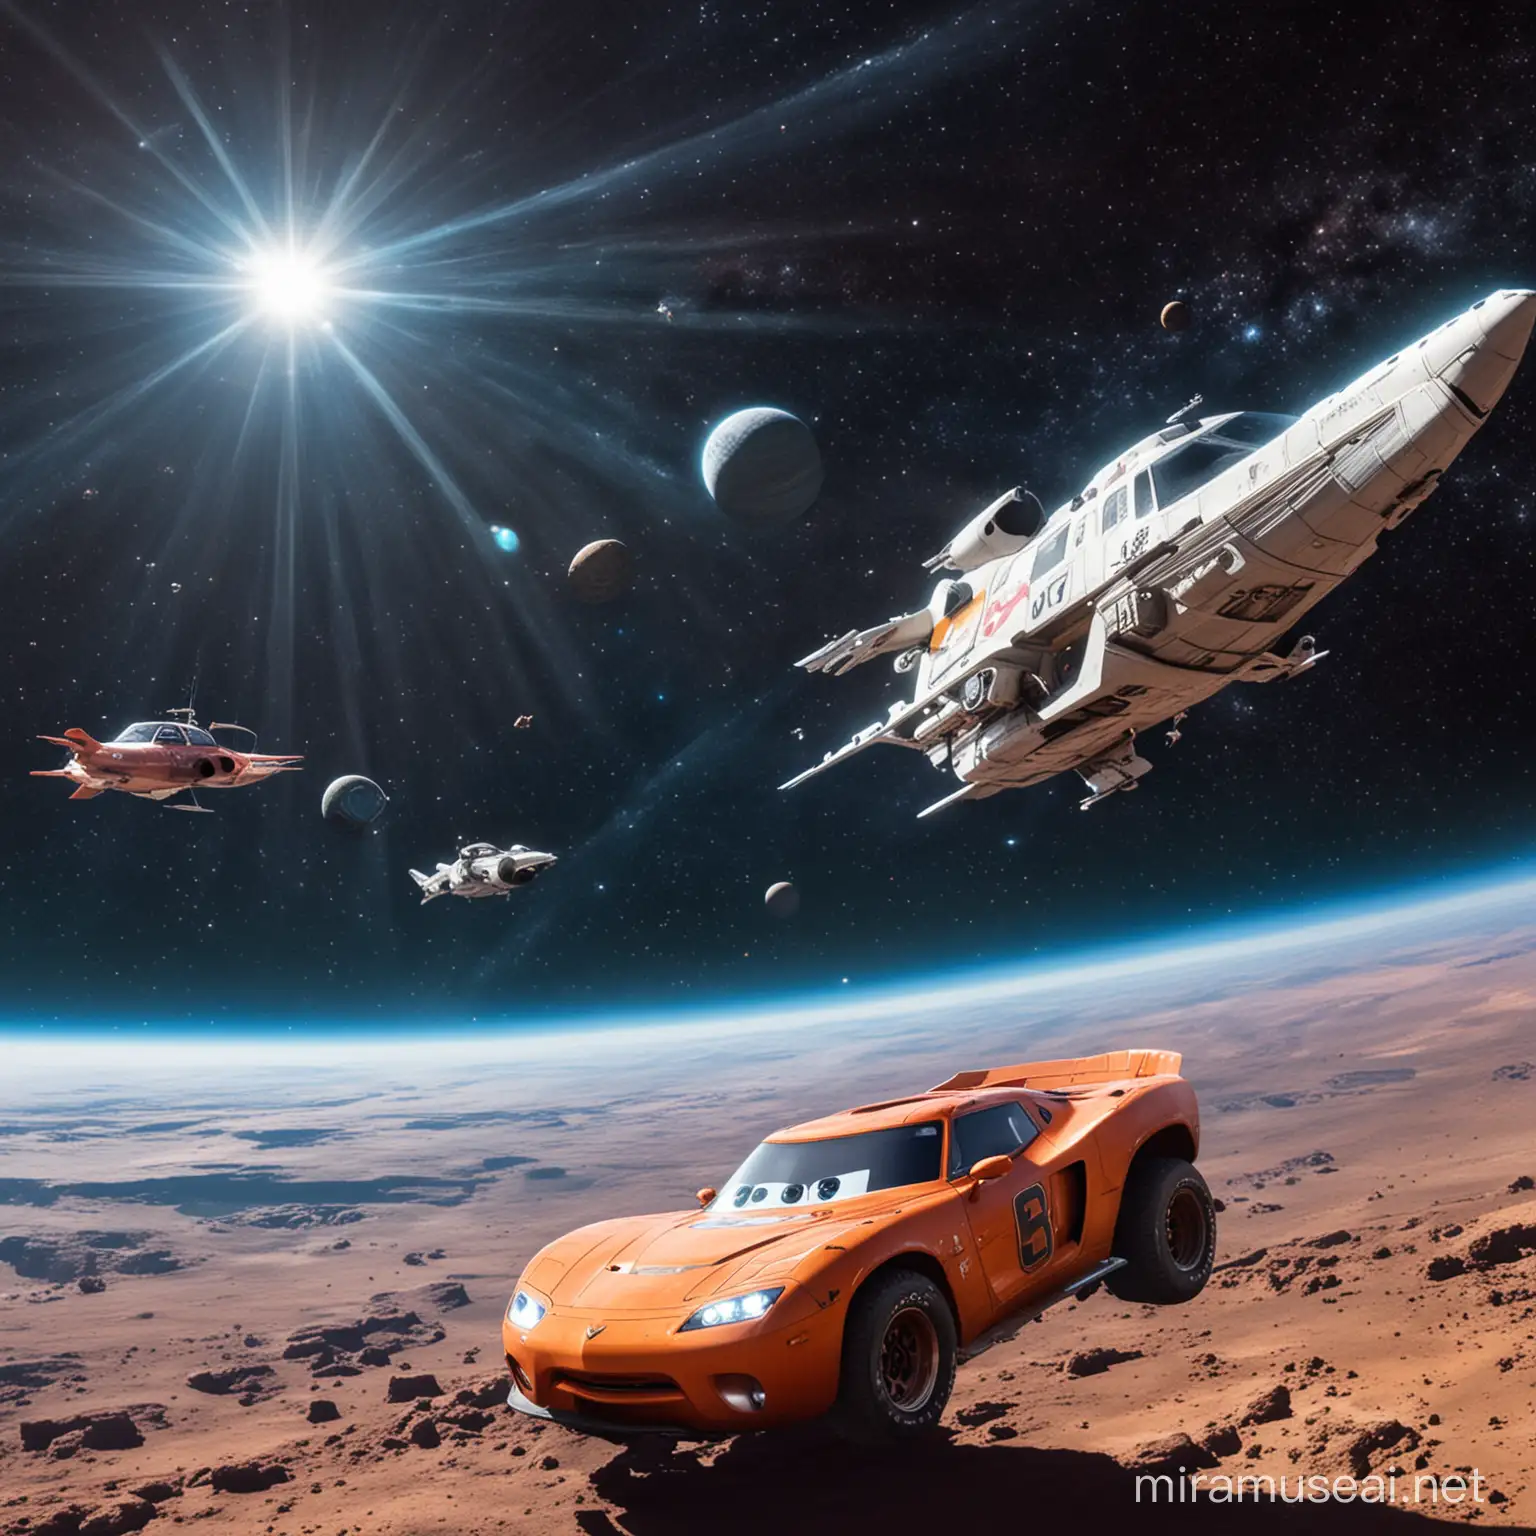 Futuristic Spaceships Cruising Through Celestial Realms